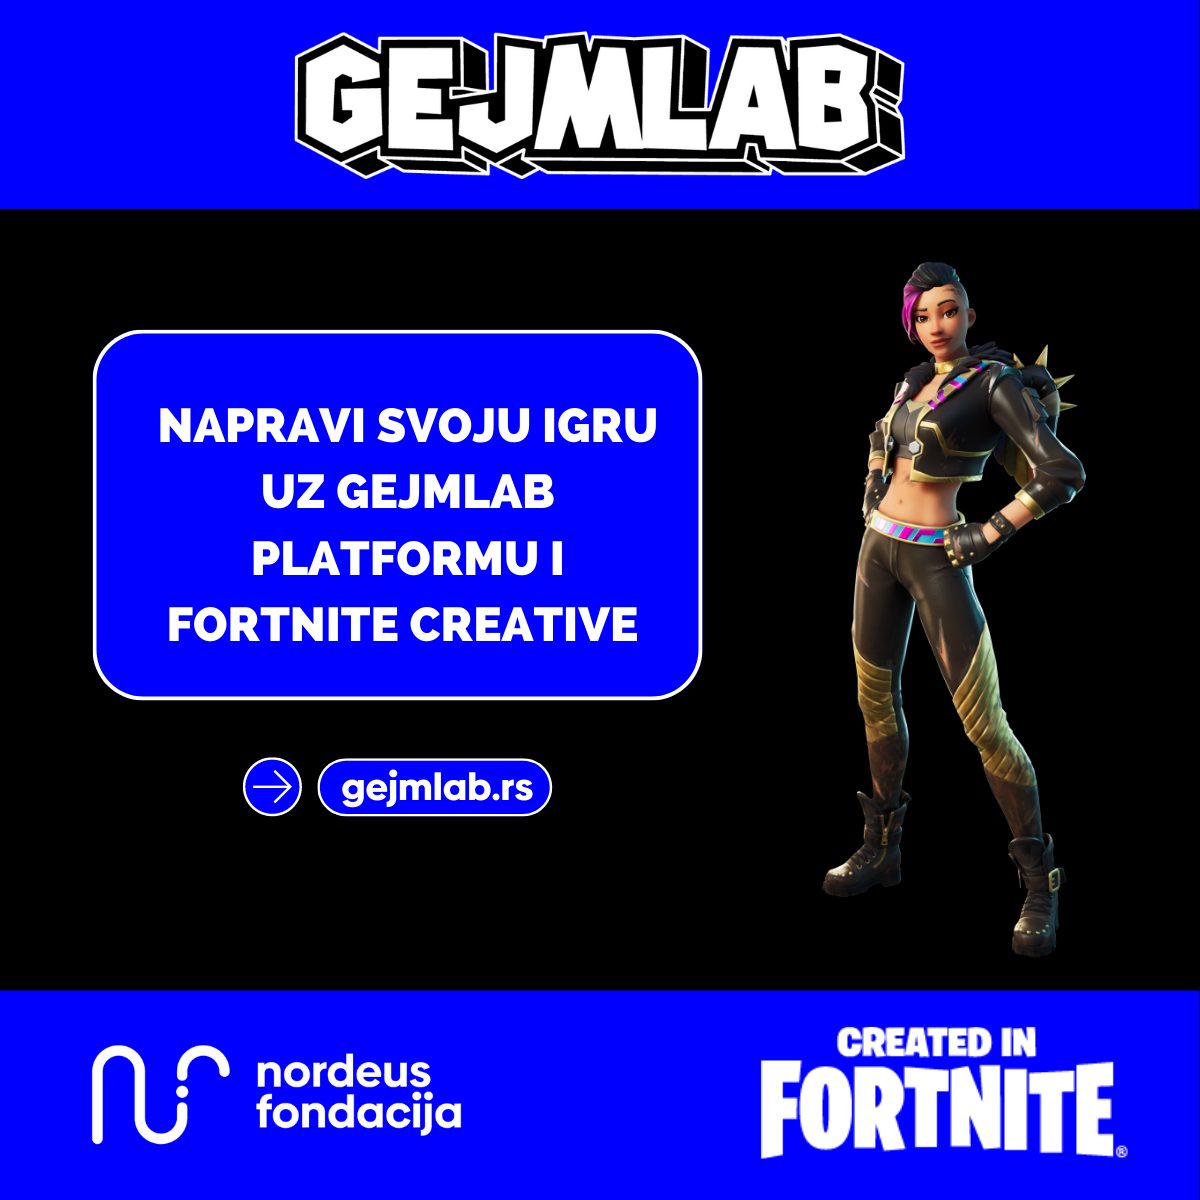 Uz Gejmlab platformu mladi u Srbiji uče da razvijaju igre u jednoj od najuspešnijih igara na svetu - Fortnite